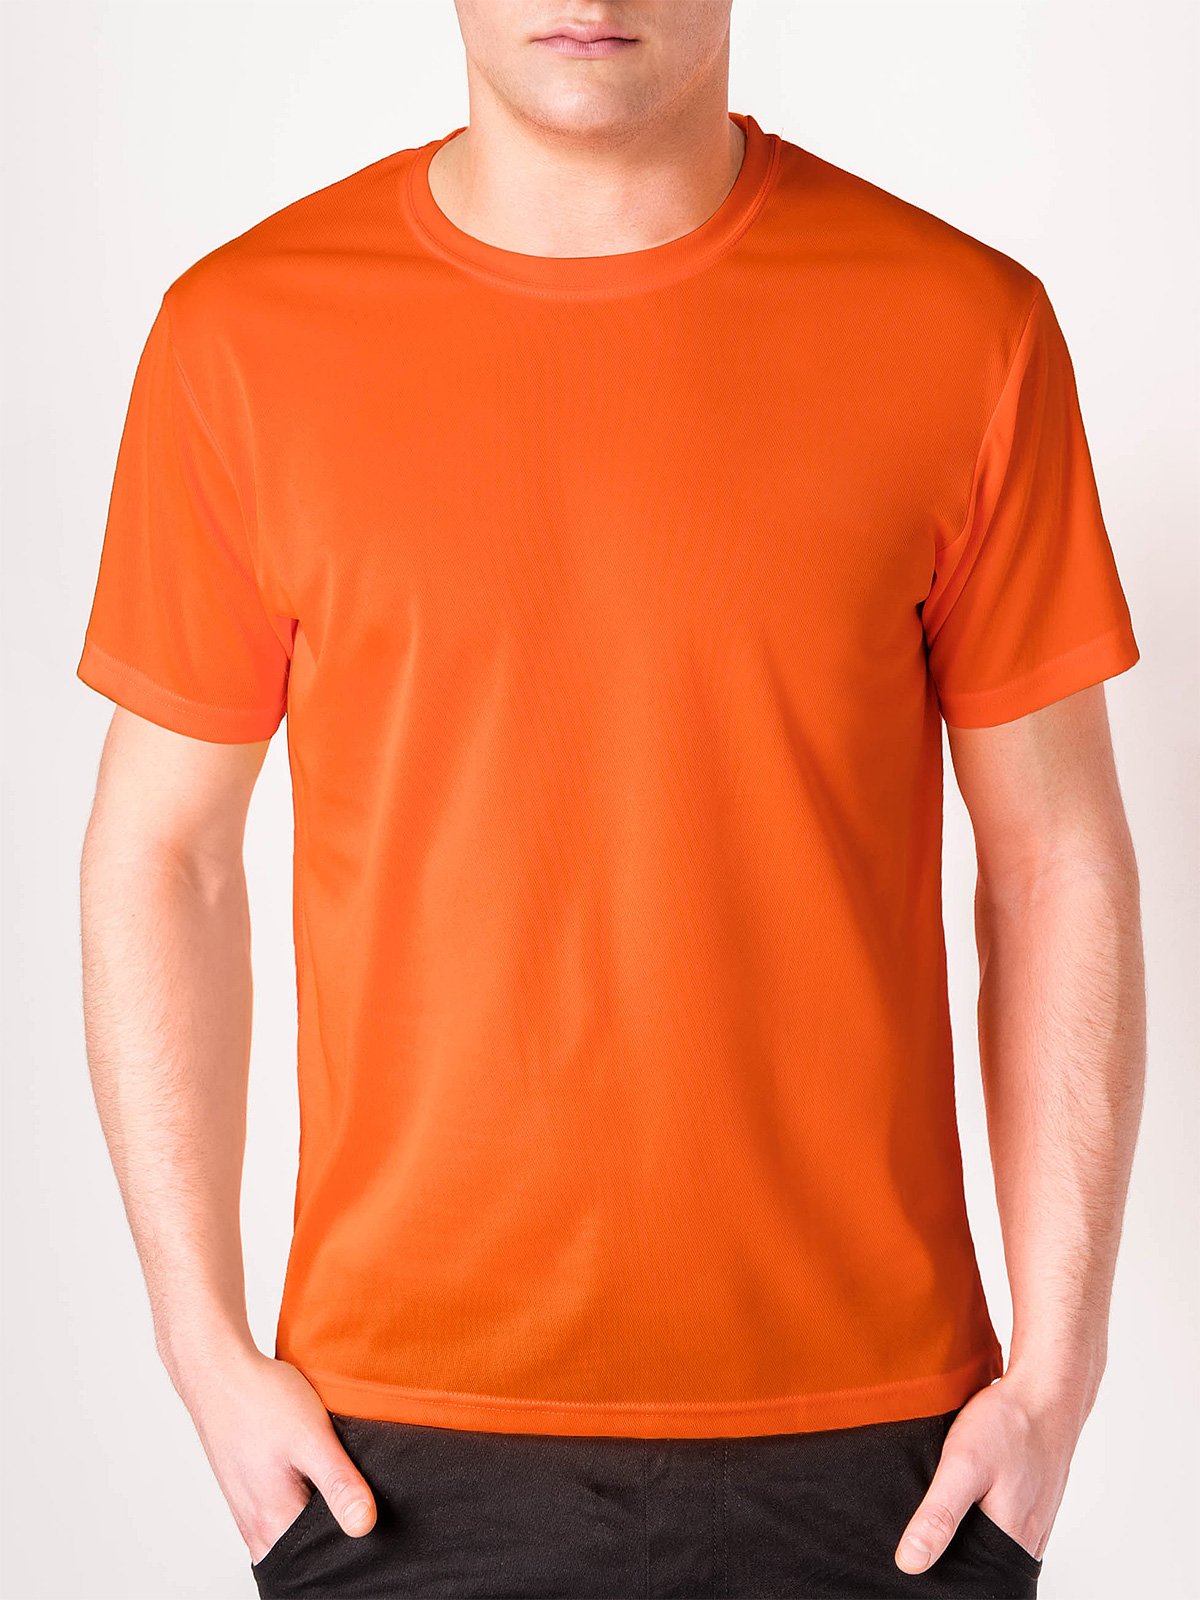 red orange t shirt